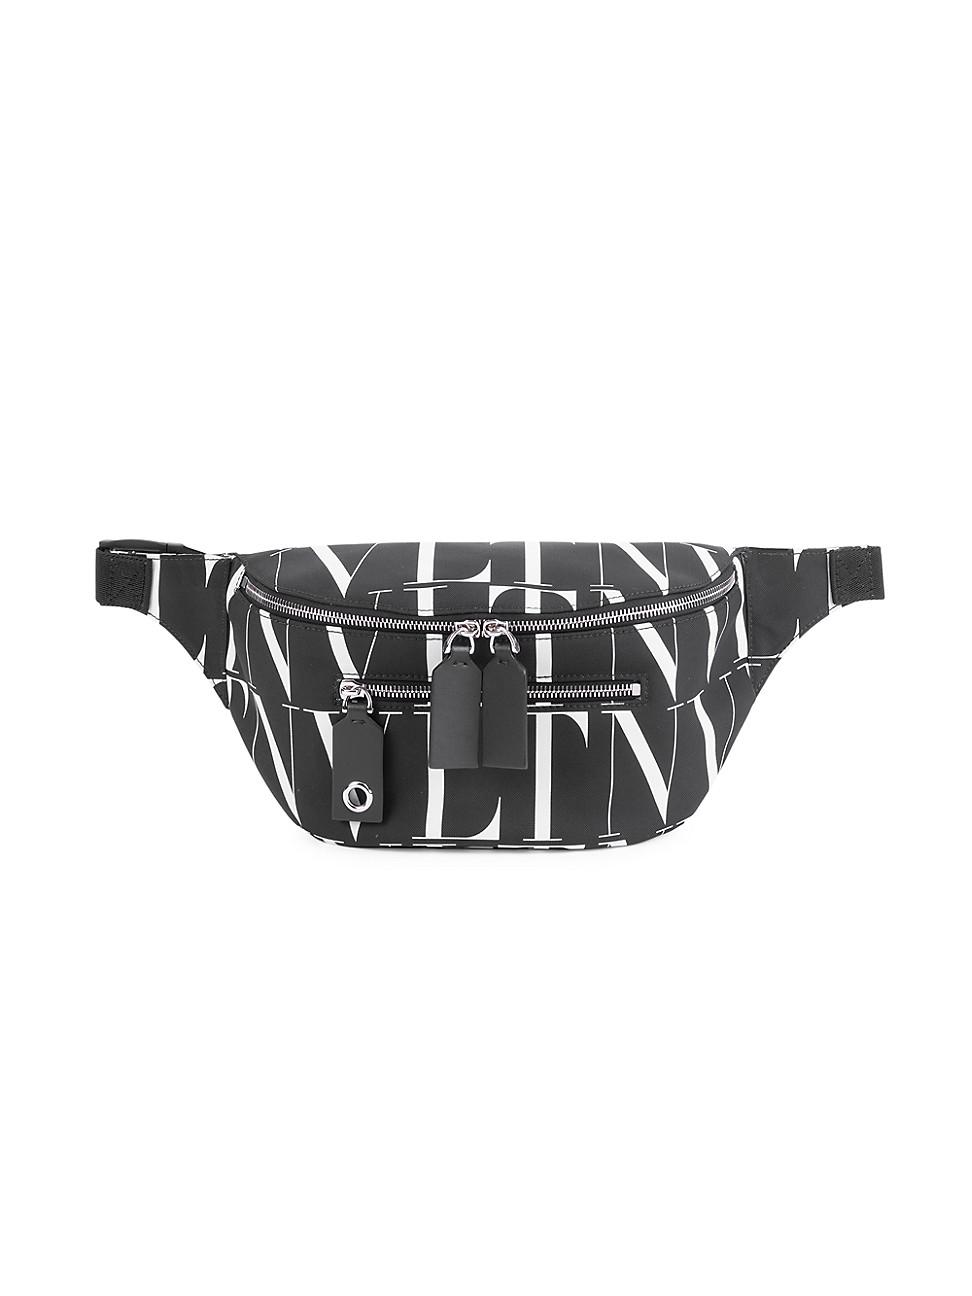 Valentino Garavani Vltn Belt Bag in Black White (Black) for Men - Lyst